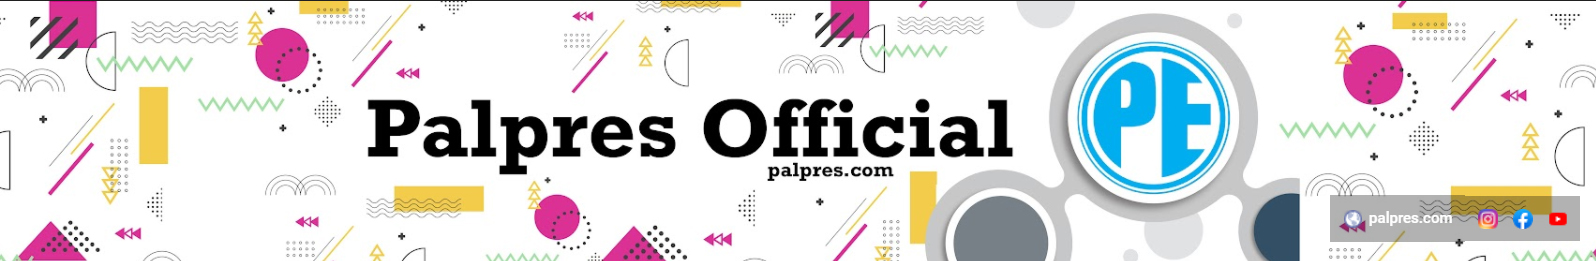 Palpres Official